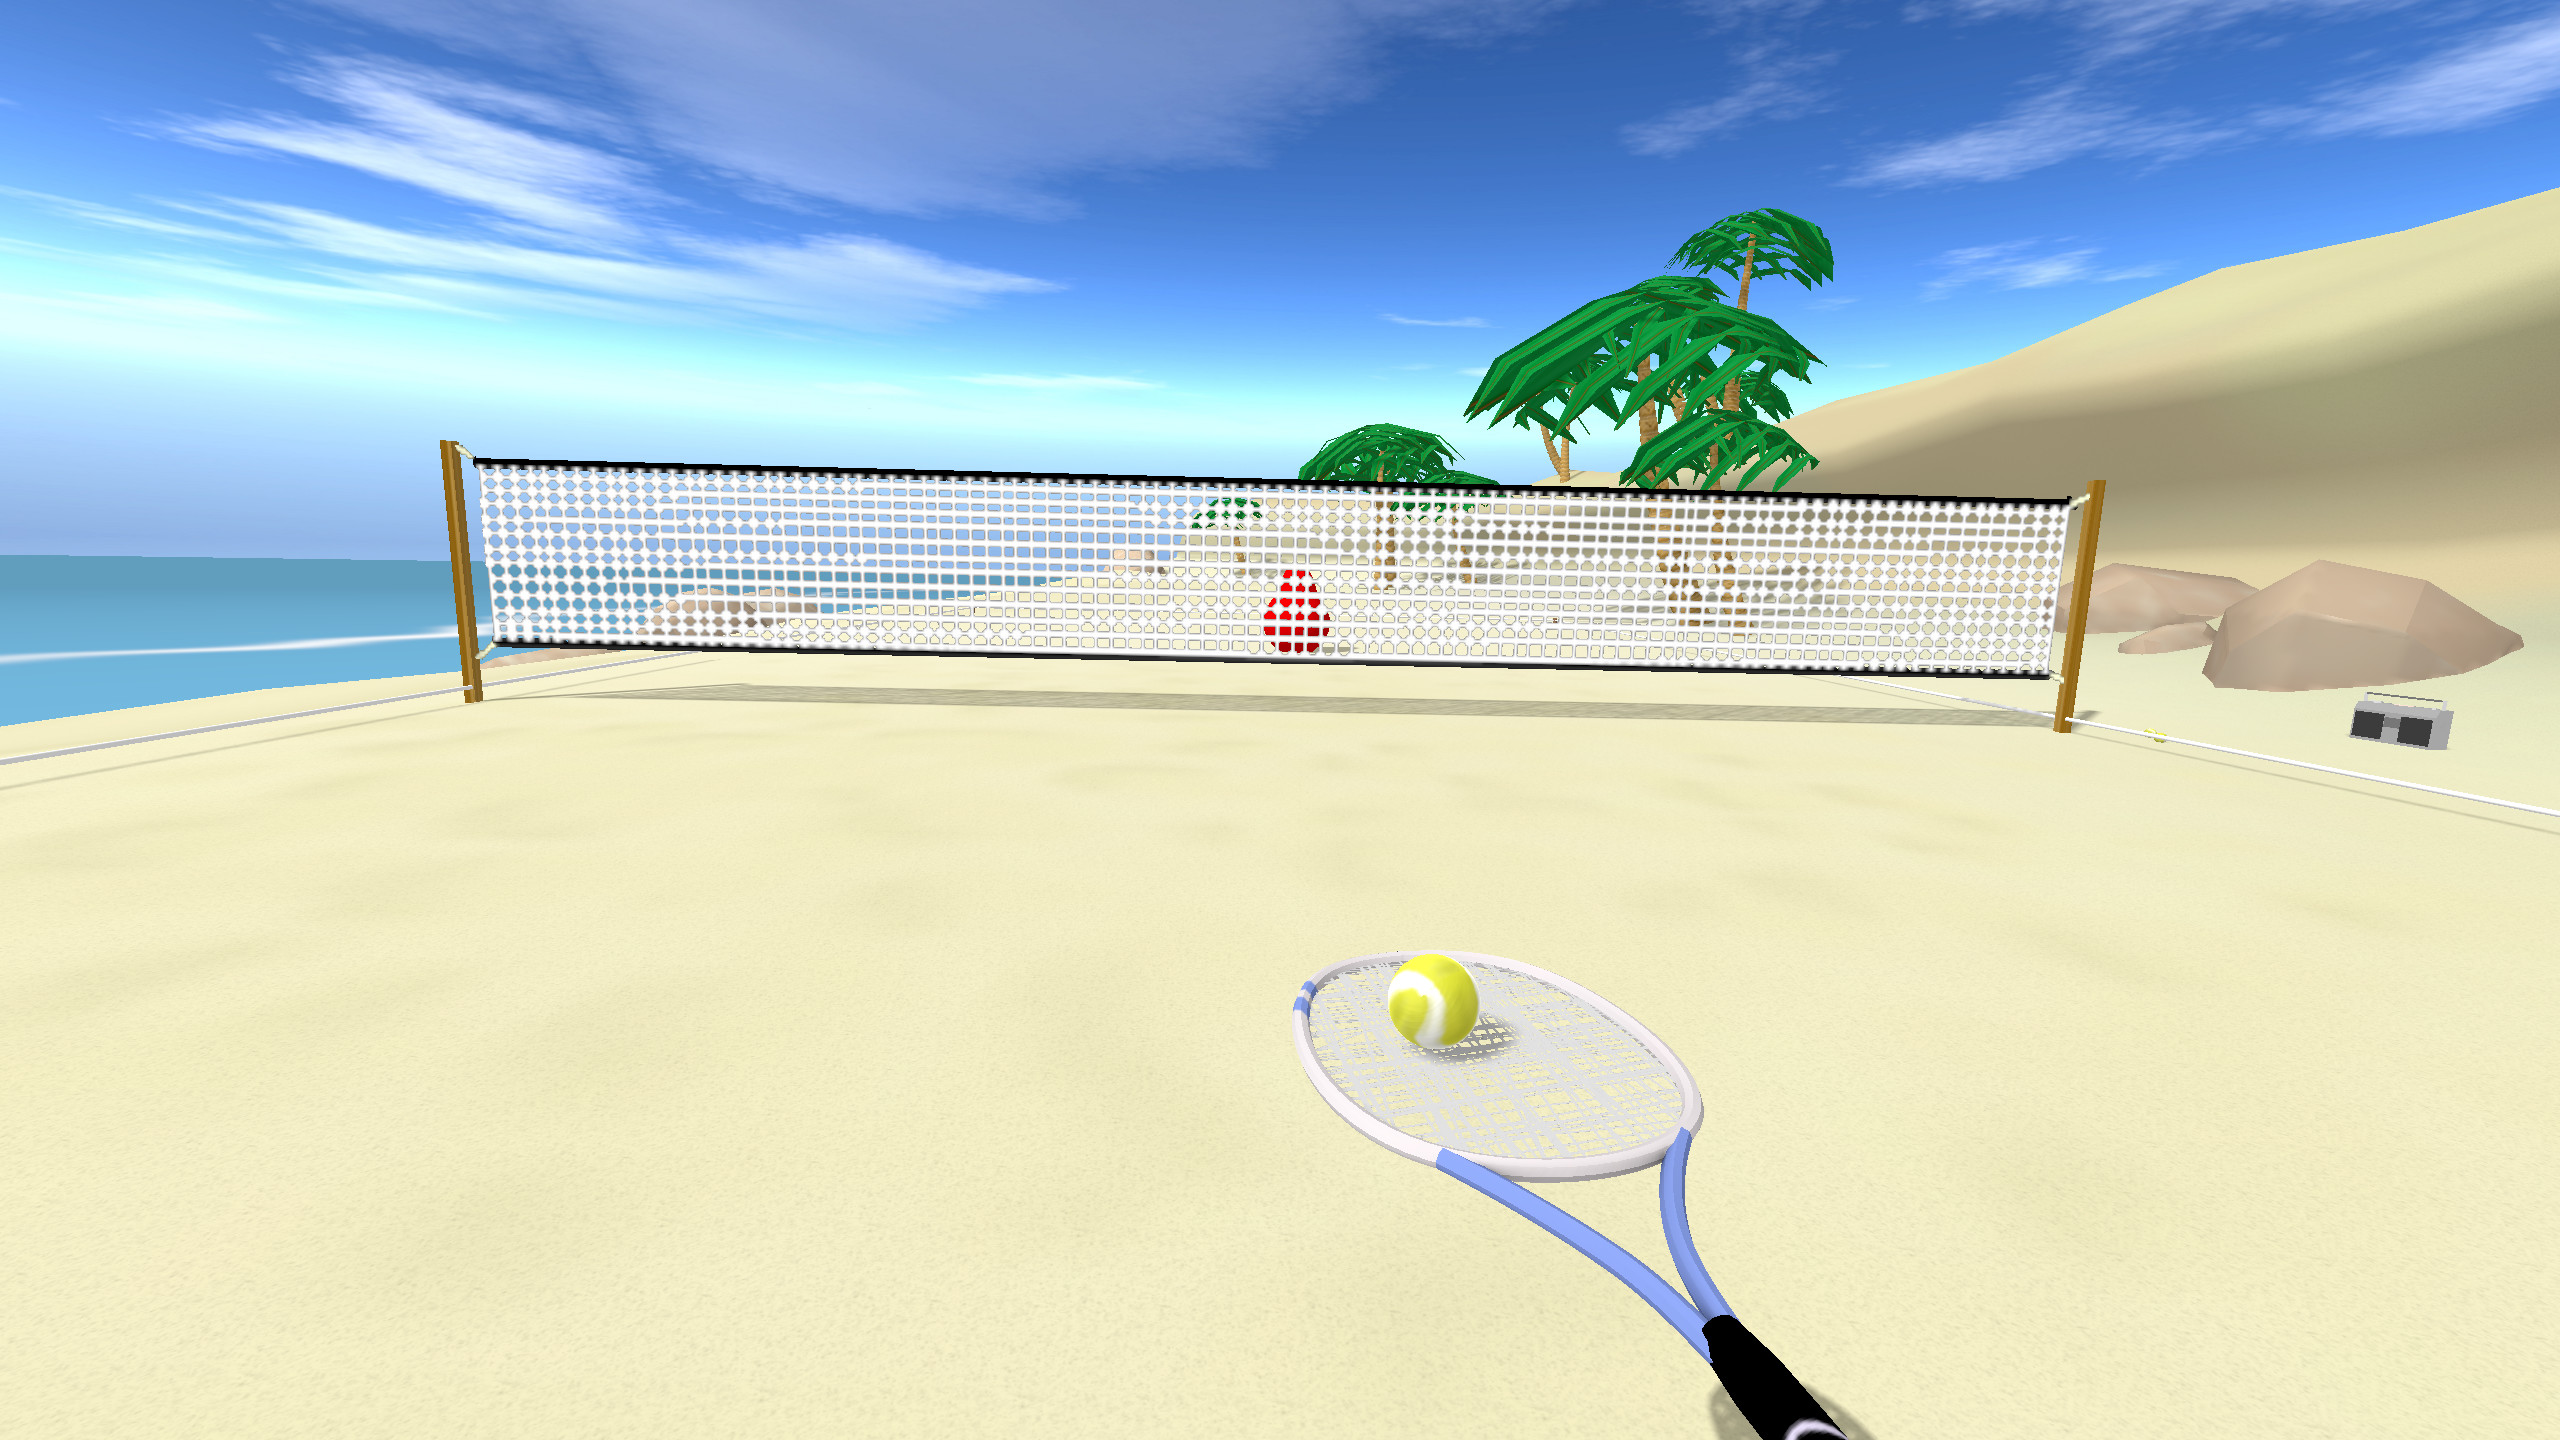 Теннис игра с ракетками. Tennis игра. Игра теннис ВР. Игра на пляже с ракетками и мячом. Теннис фон.